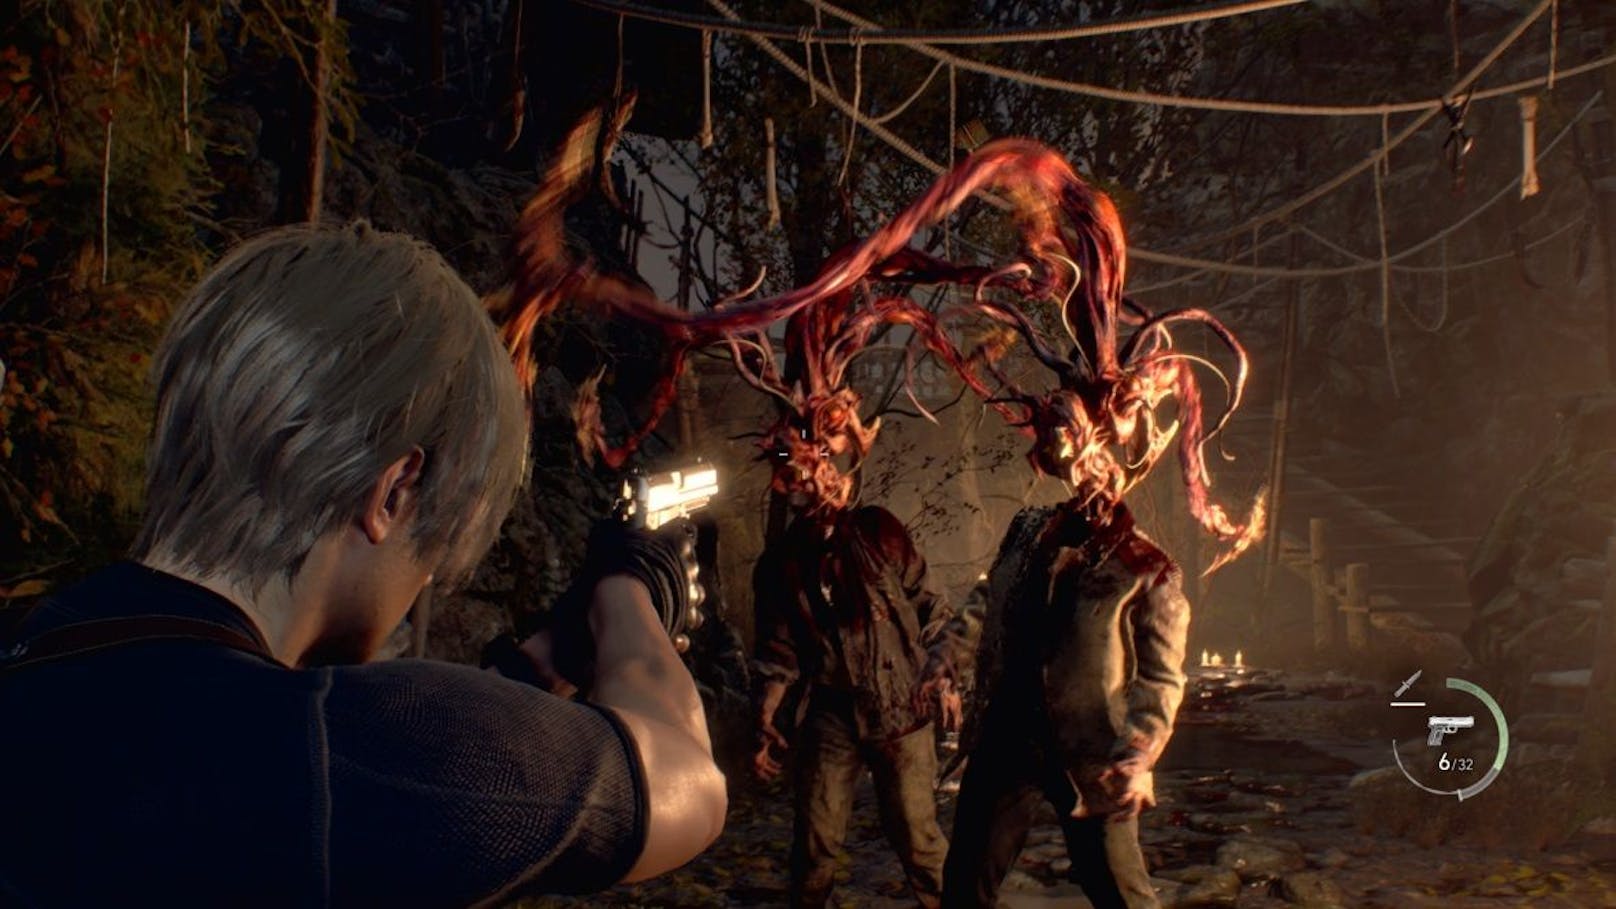 Vollkommen neuer Horror im "Resident Evil 4 Remake"